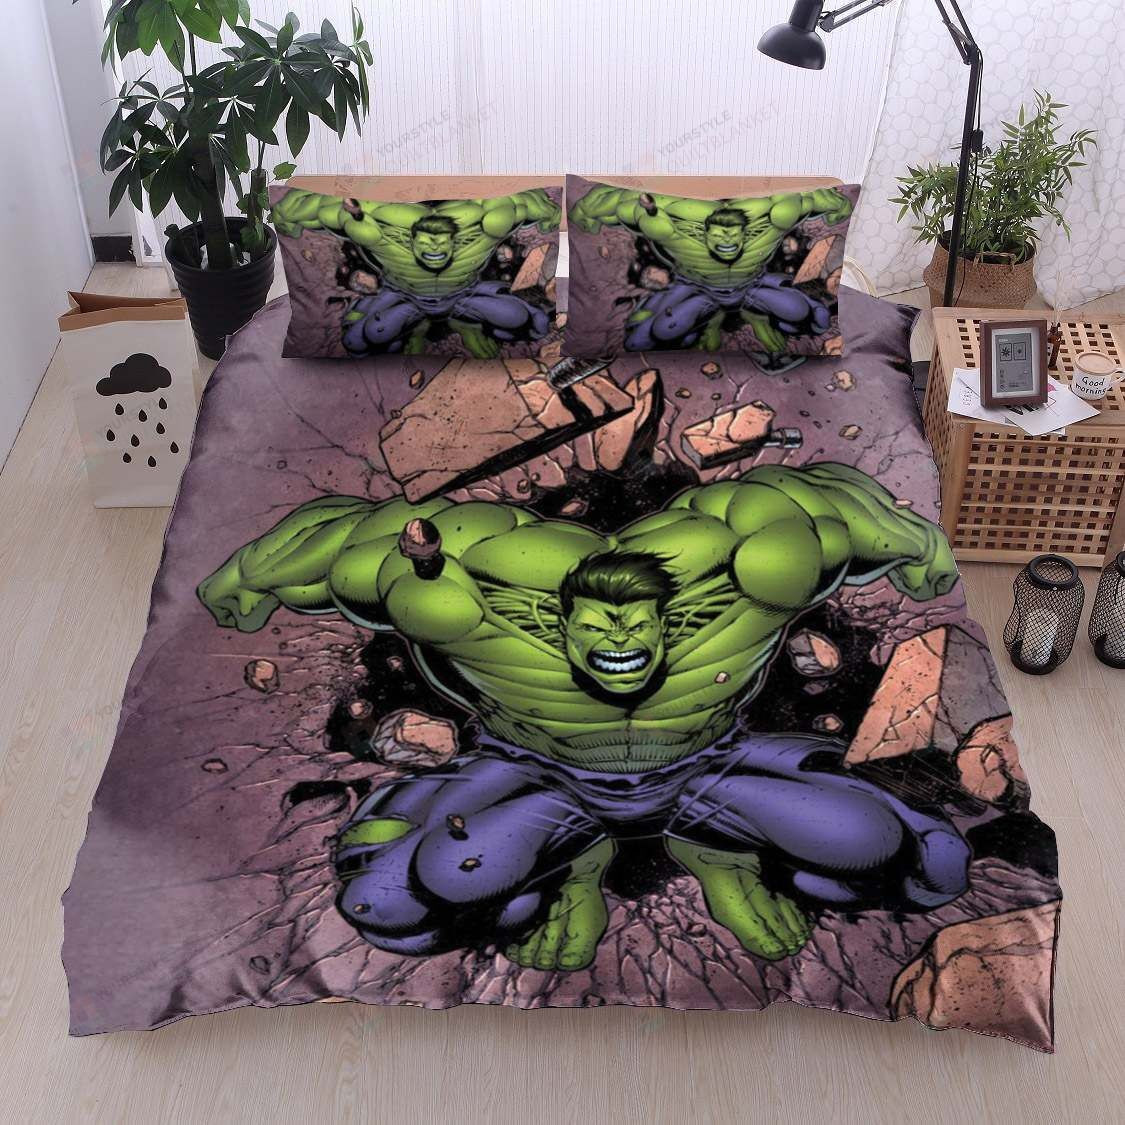 Hulk Bedding Sets (Duvet Cover & Pillow Cases)